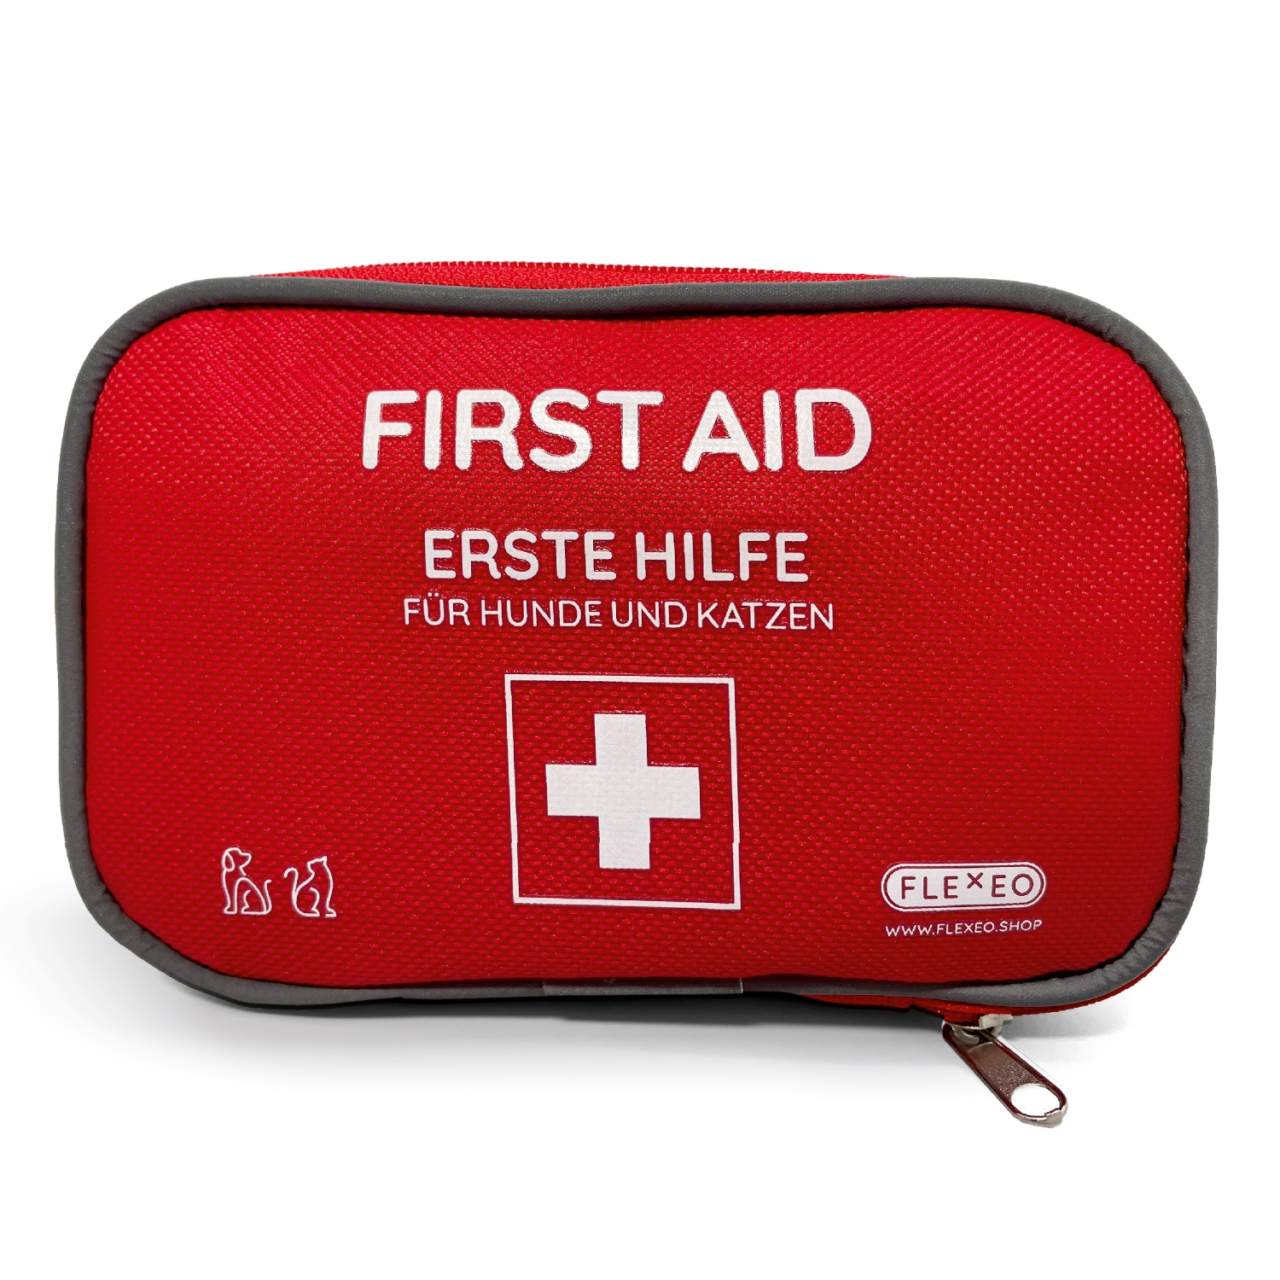 Erste-Hilfe-Tasche für Hunde